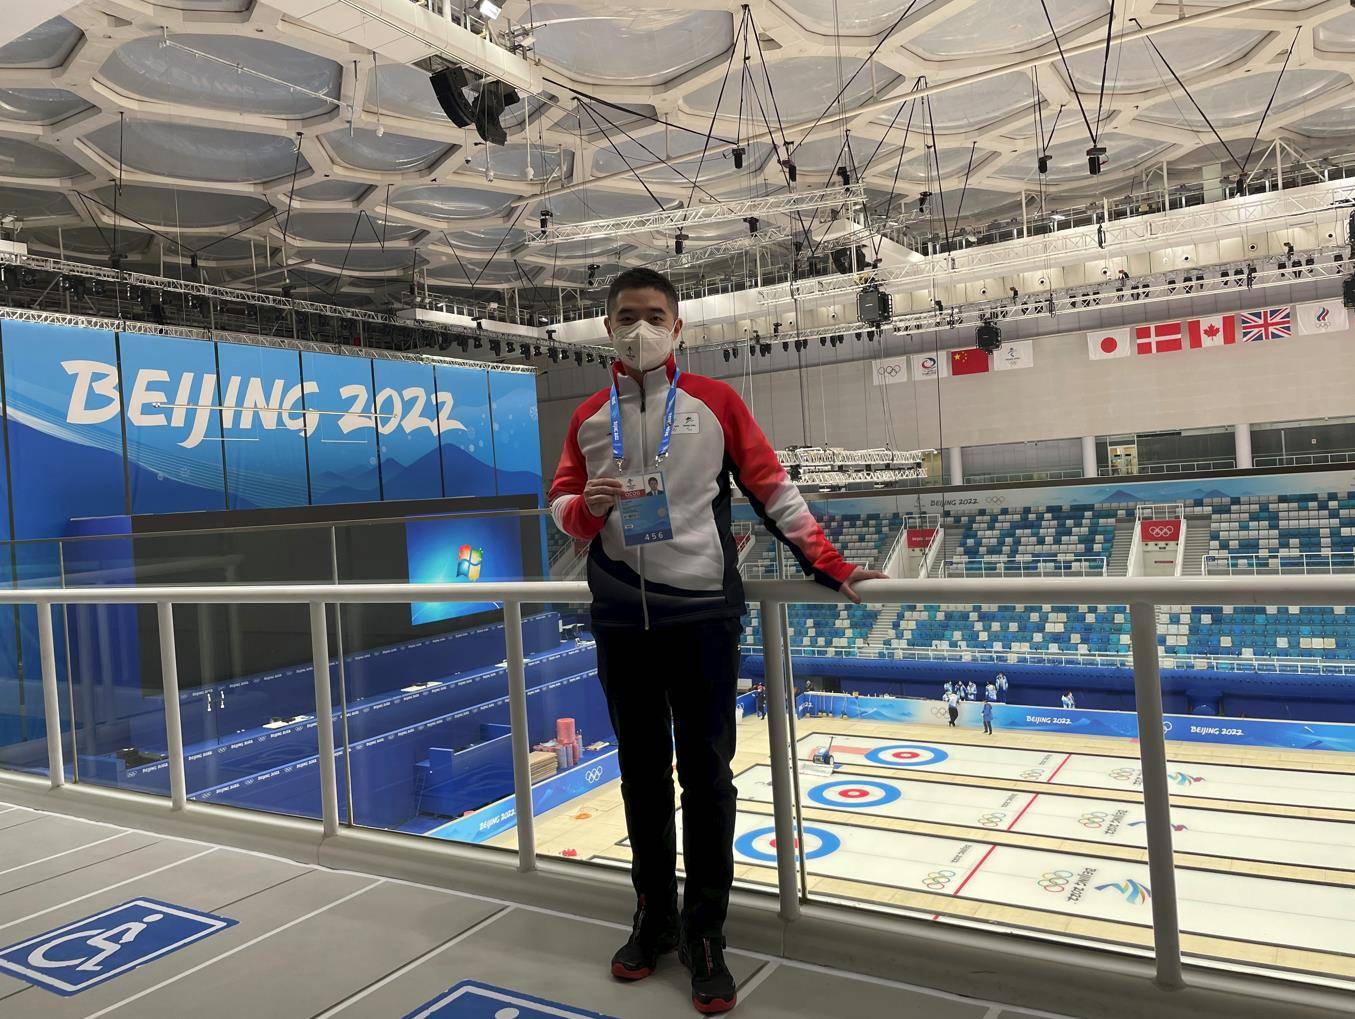 场馆|在这座冬奥会赛期最长的场馆 他希望记者记录一届精彩的赛事